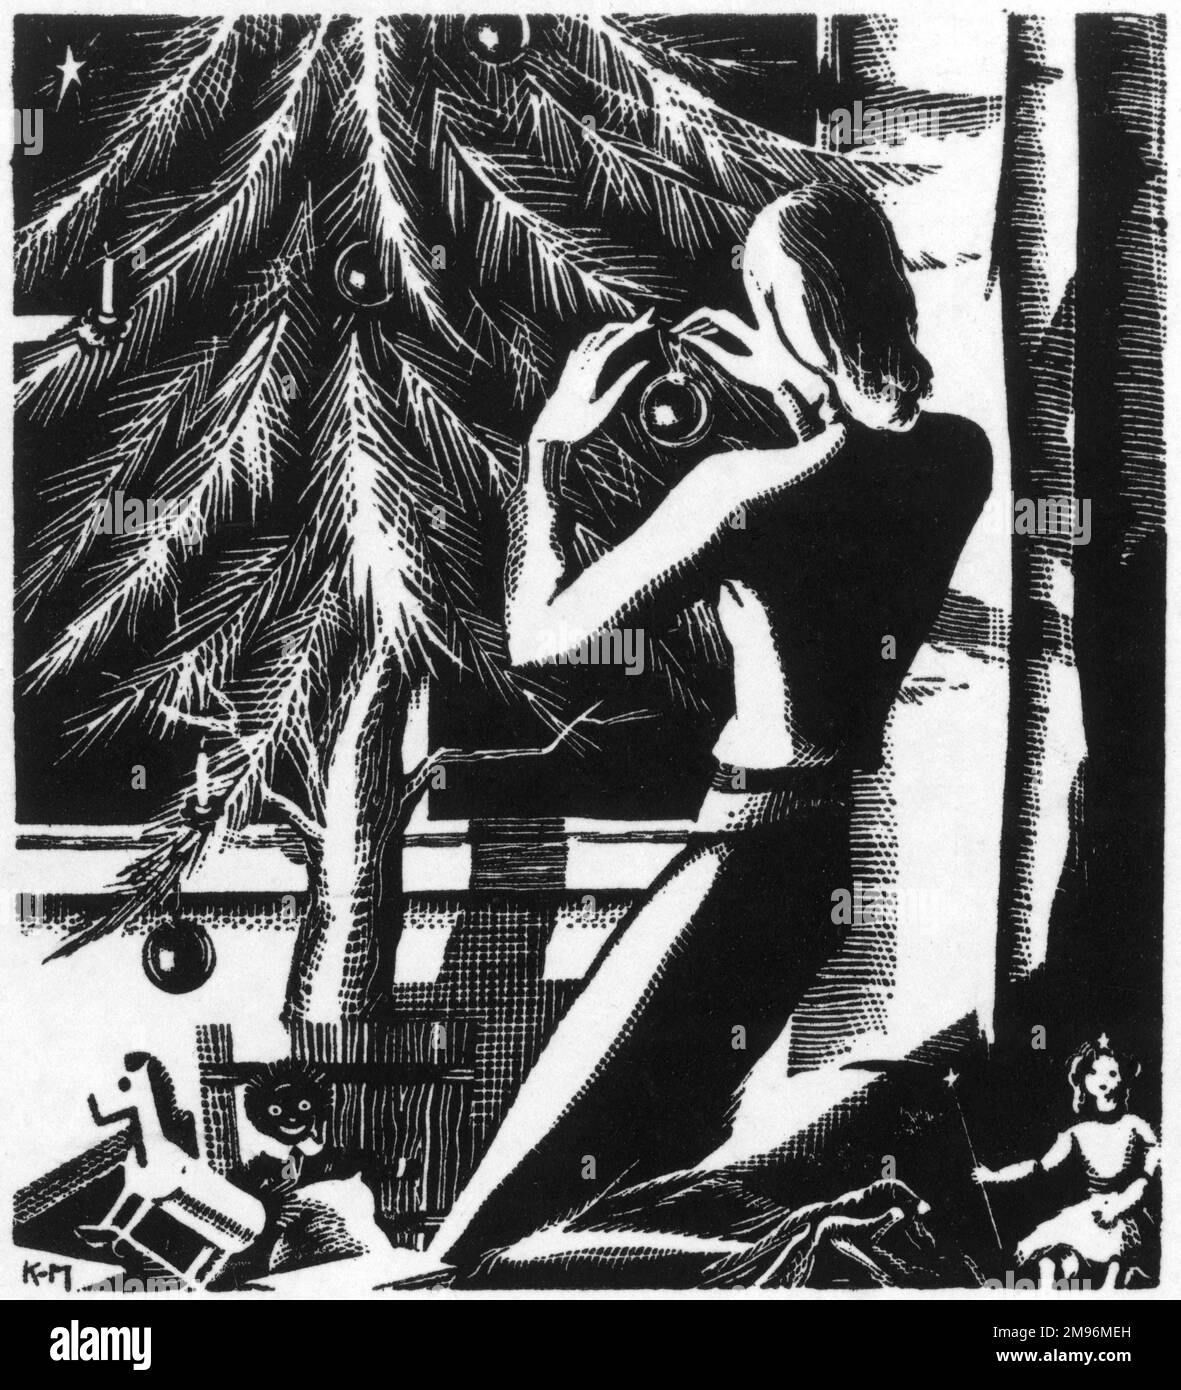 Eine schwarz-weiße Illustration, die eine Frau zeigt, die Kugeln an einen Weihnachtsbaum hängt. Stockfoto